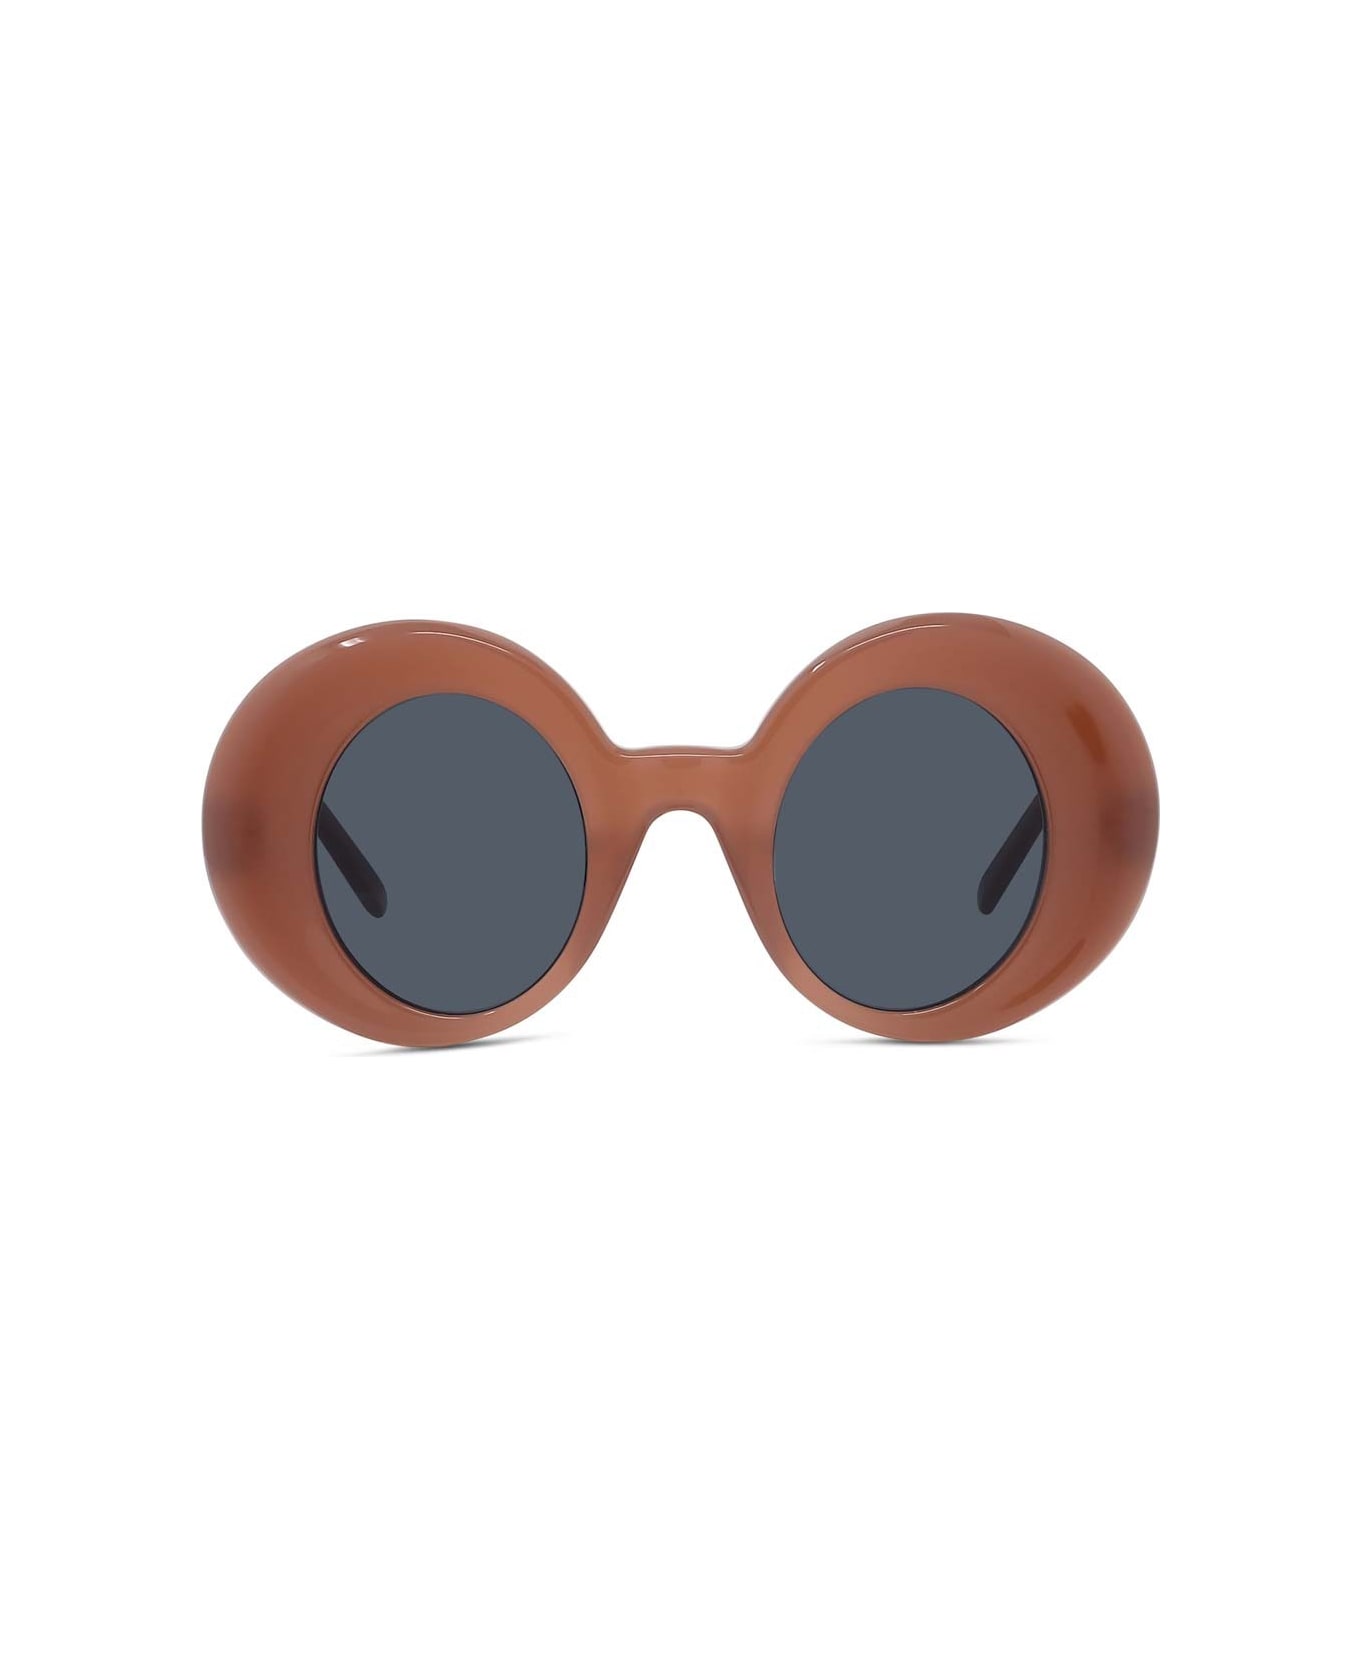 Loewe Sunglasses - Rosso/Grigio サングラス